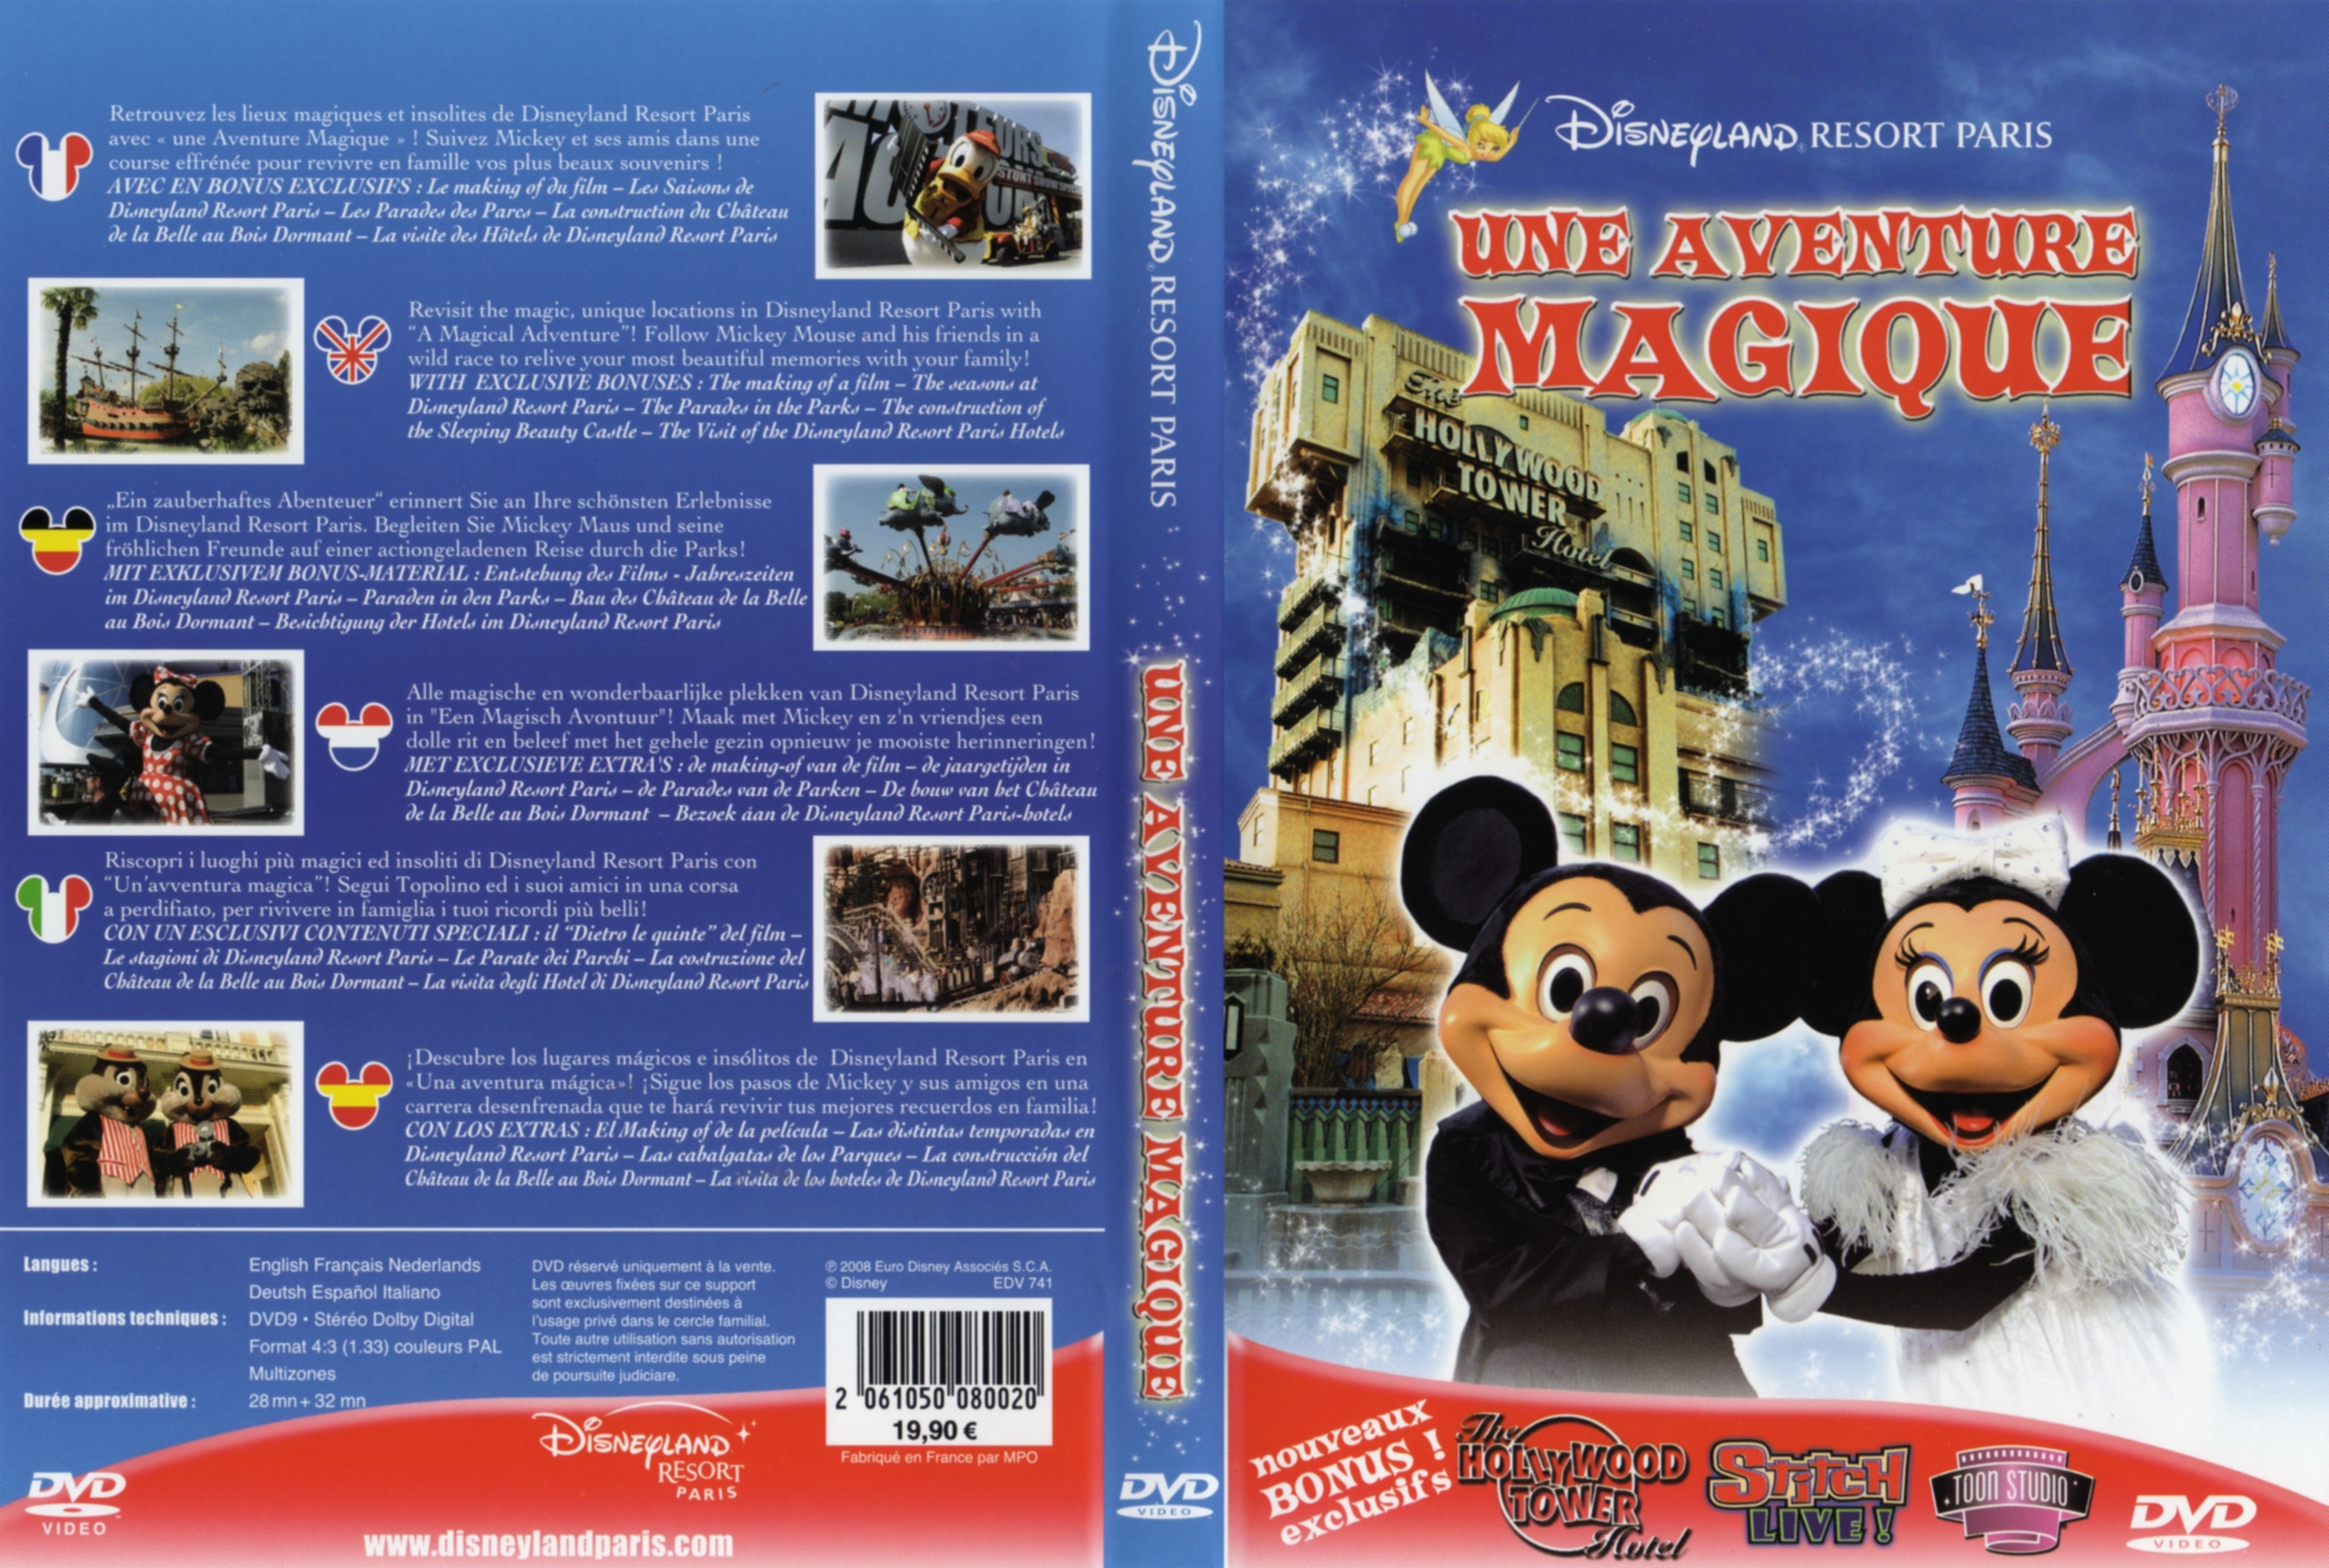 Jaquette DVD Disneyland Resort Paris une aventure magique